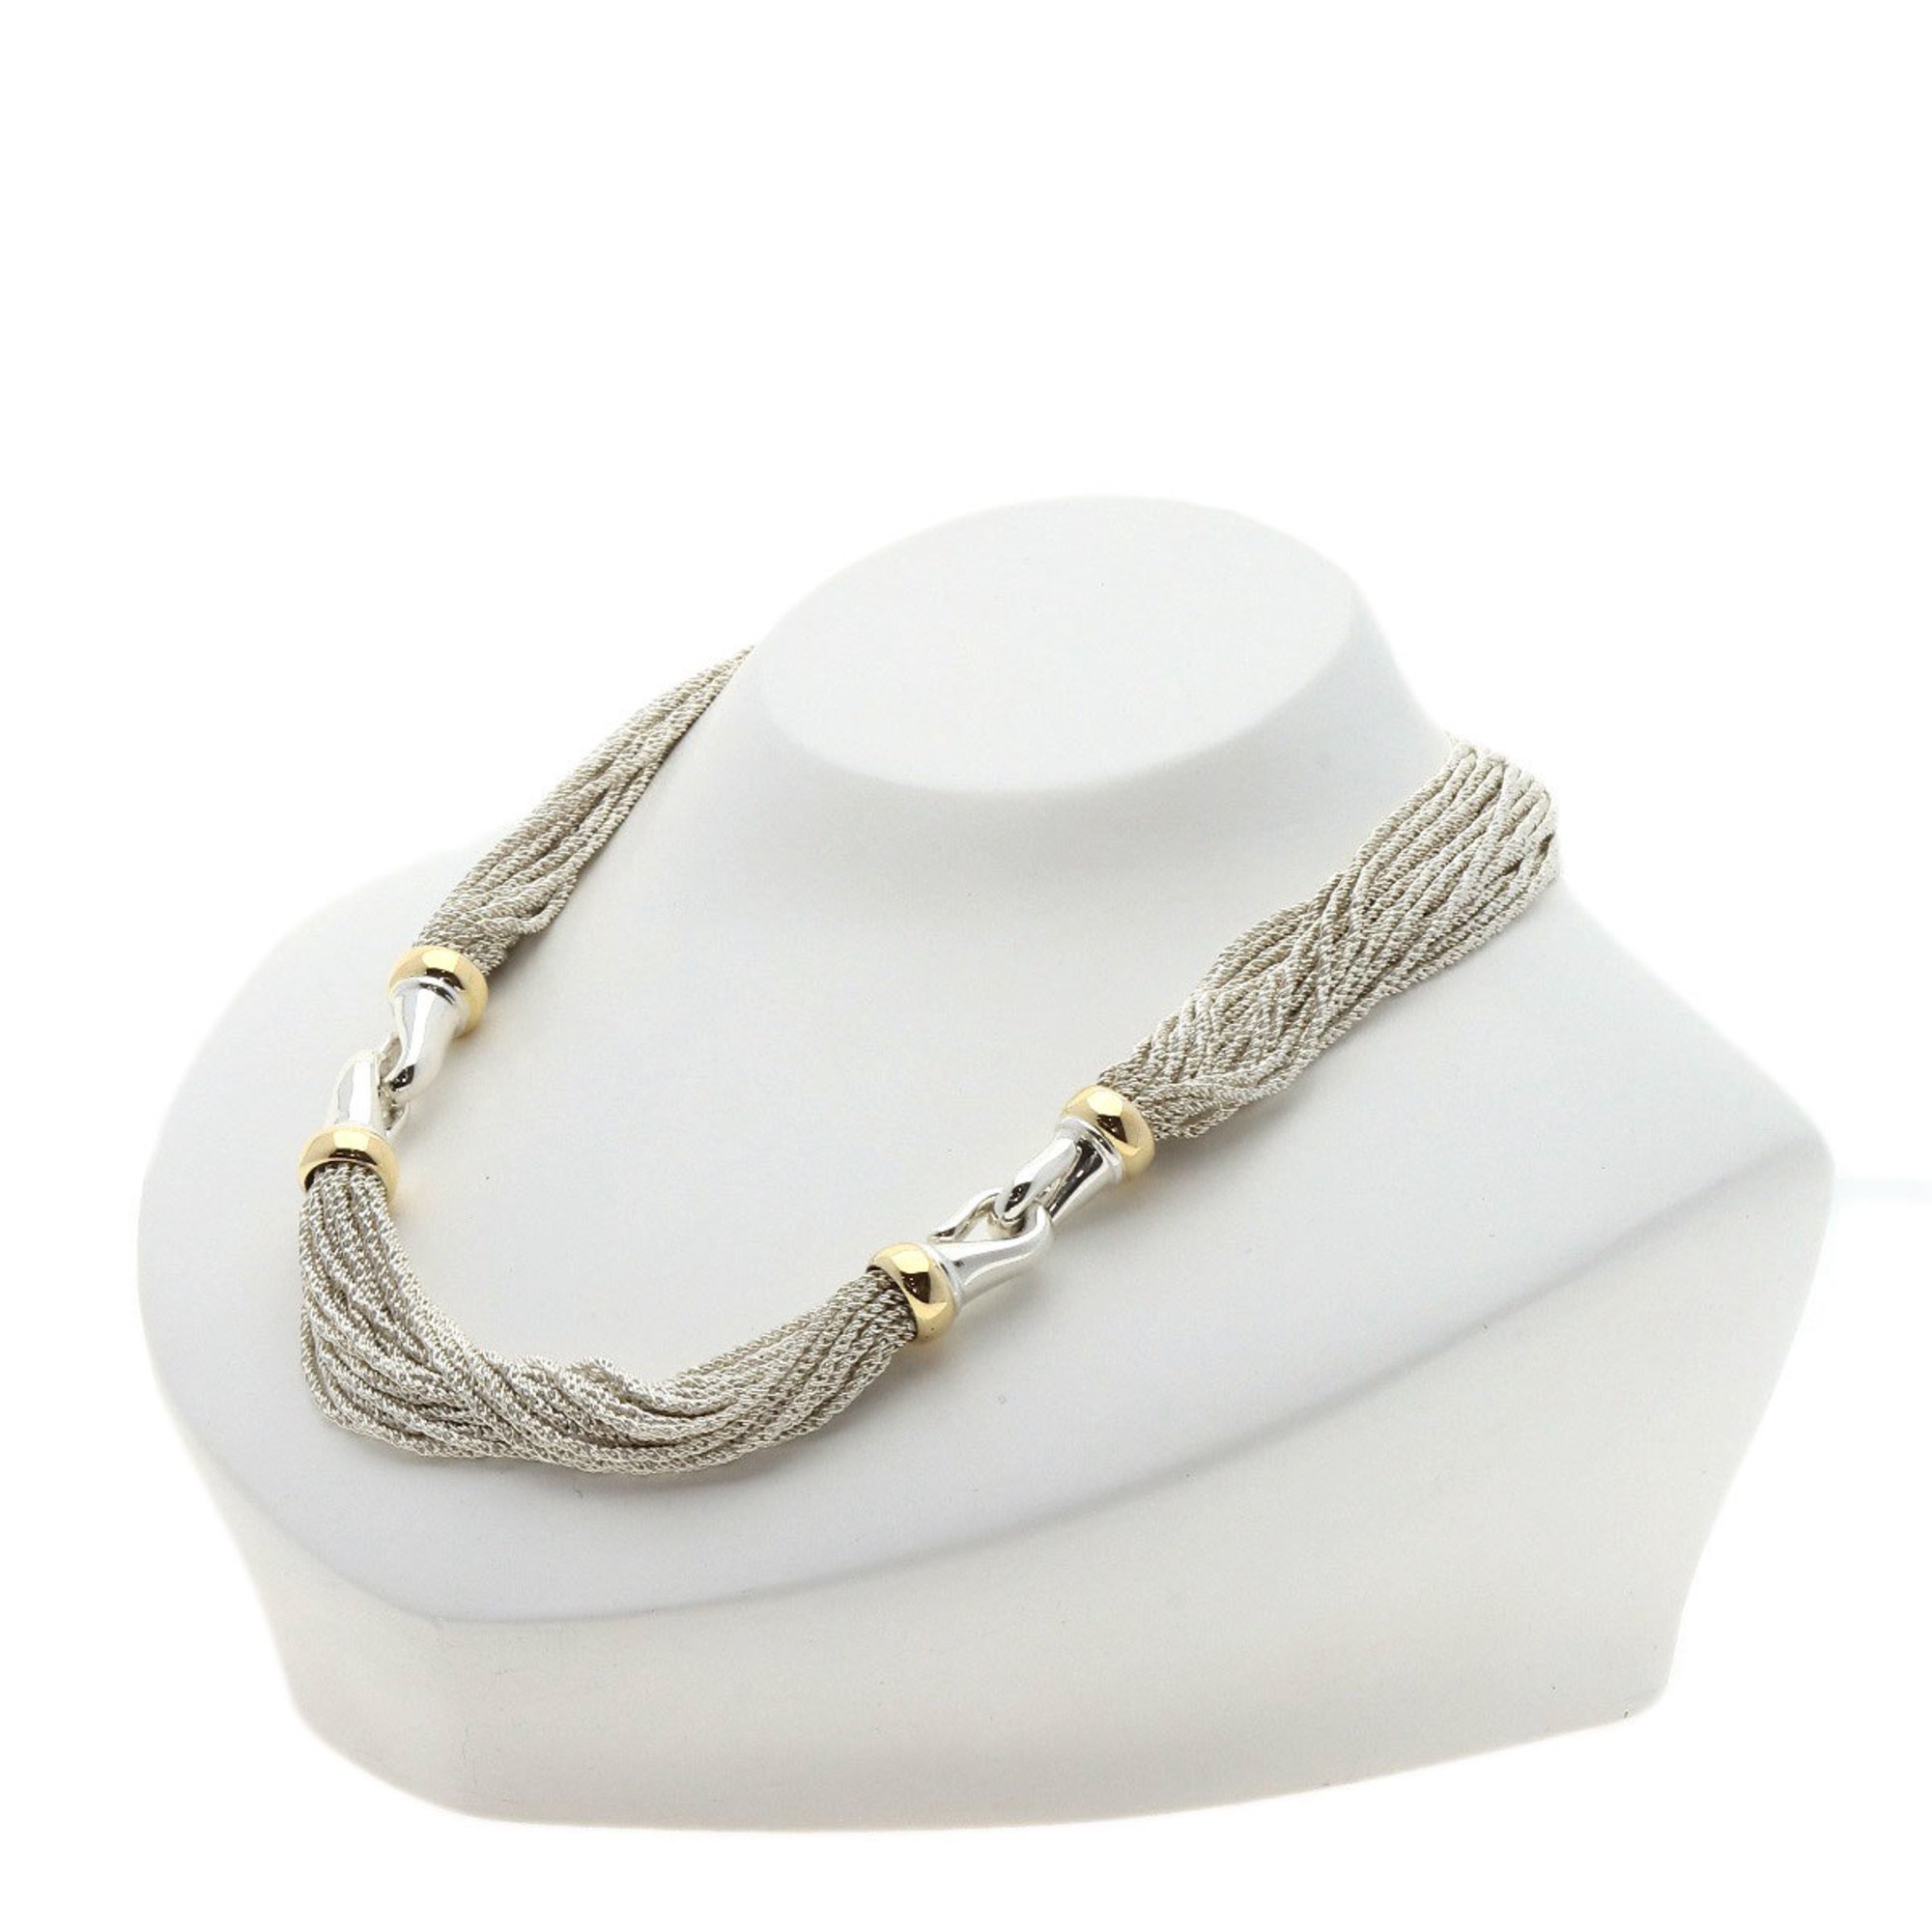 Tiffany design necklace silver ladies